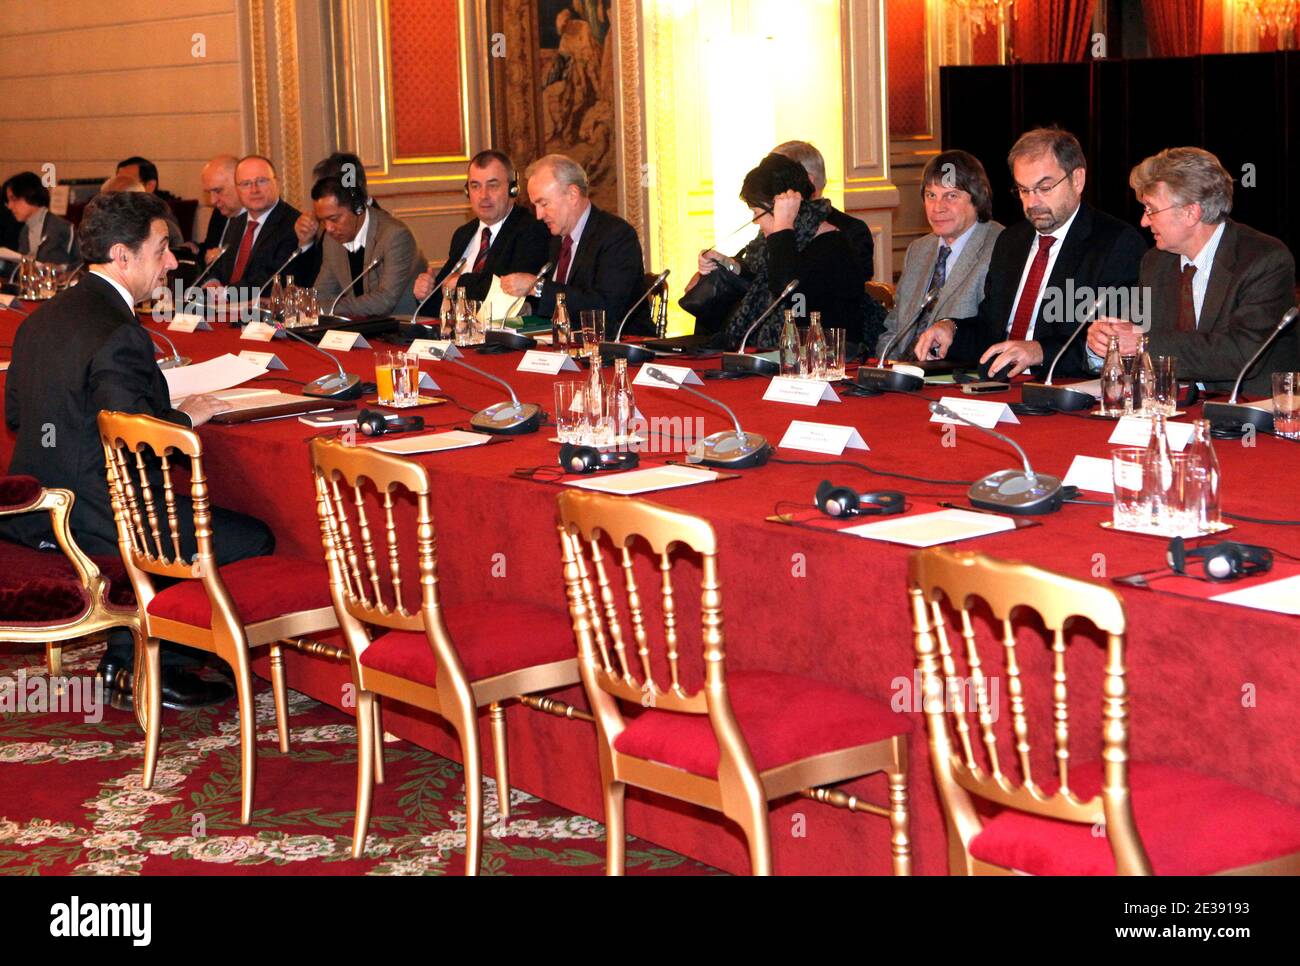 Der französische Präsident Nicolas Sarkozy (L) besucht französische Gewerkschaftsführer wie CGT-Generalsekretär Bernard Thibault (3R), CFDT-Chef Francois Chereque (2R), FO-Generalsekretär Jean-Claude Mailly (R) und andere Delegierte des Internationalen Gewerkschaftsbundes im Elysee-Palast in Paris, Frankreich, Am 2010. Dezember ein Treffen mit dem französischen Präsidenten Nicolas Sarkozy, um die französische Präsidentschaft der G20 im Jahr 2011 vorzubereiten. Foto von Lucas Dolega/Pool/ABACAPRESS.COM Stockfoto